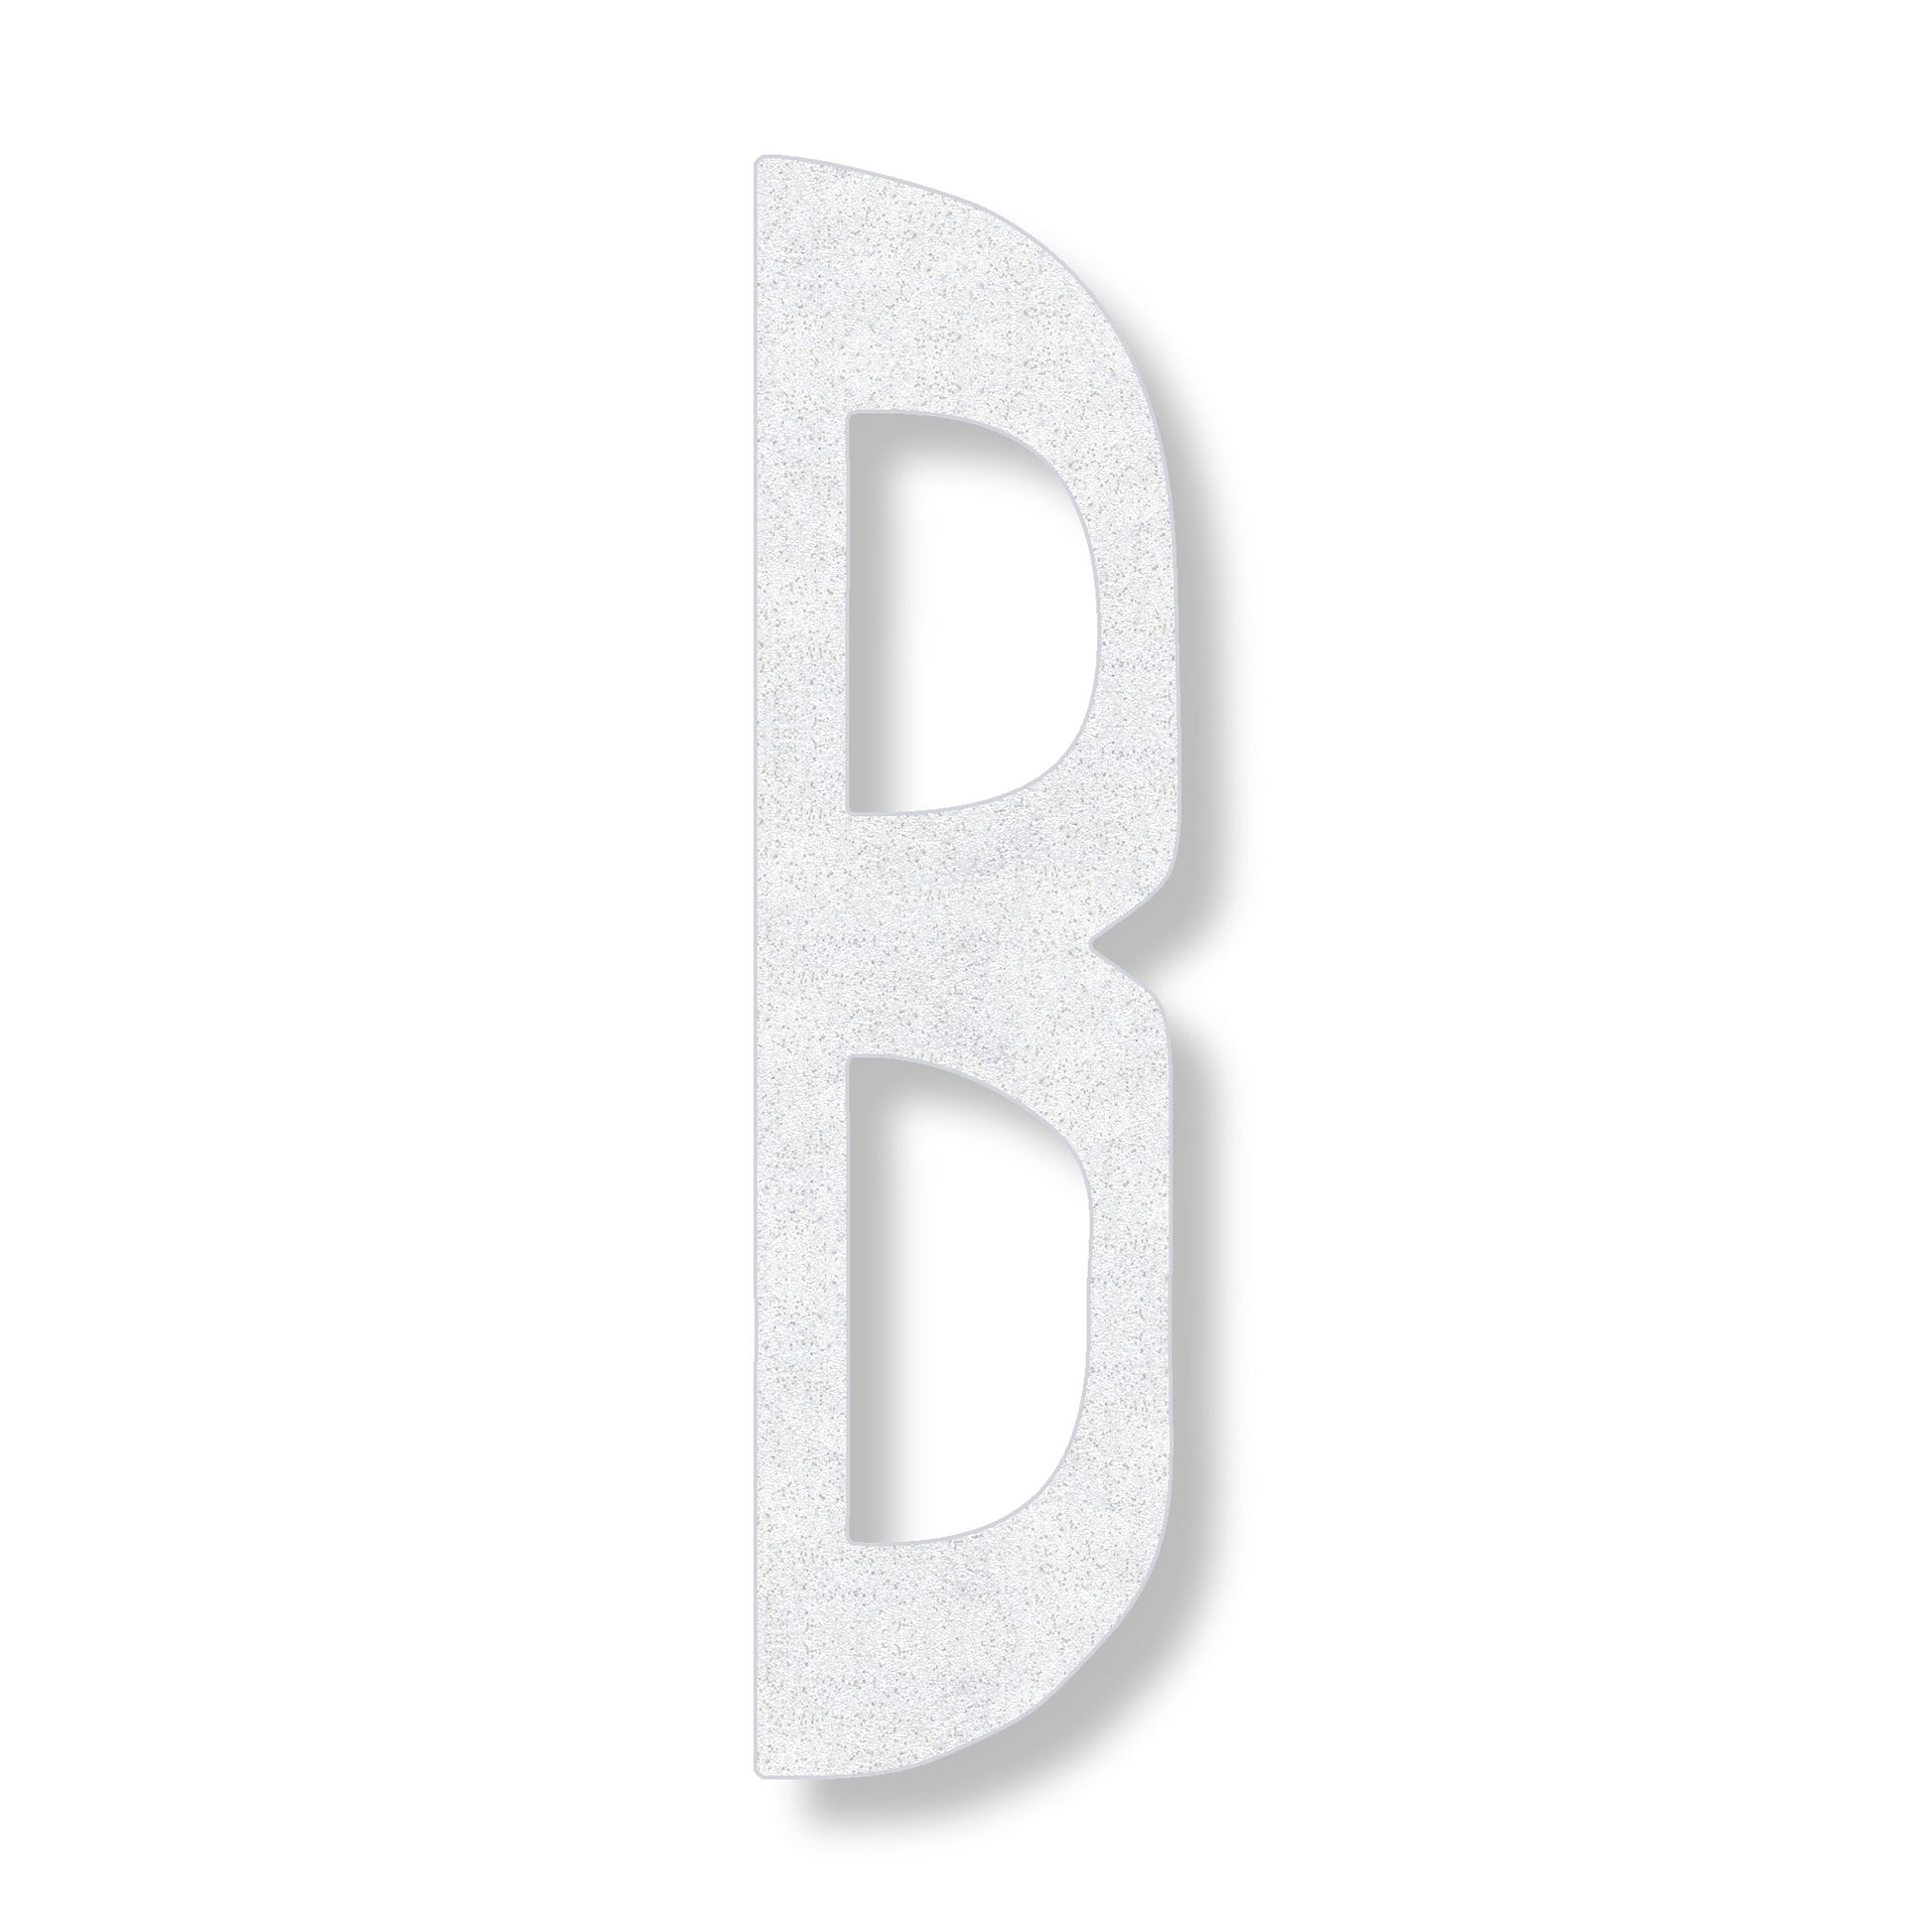 Letter B in white